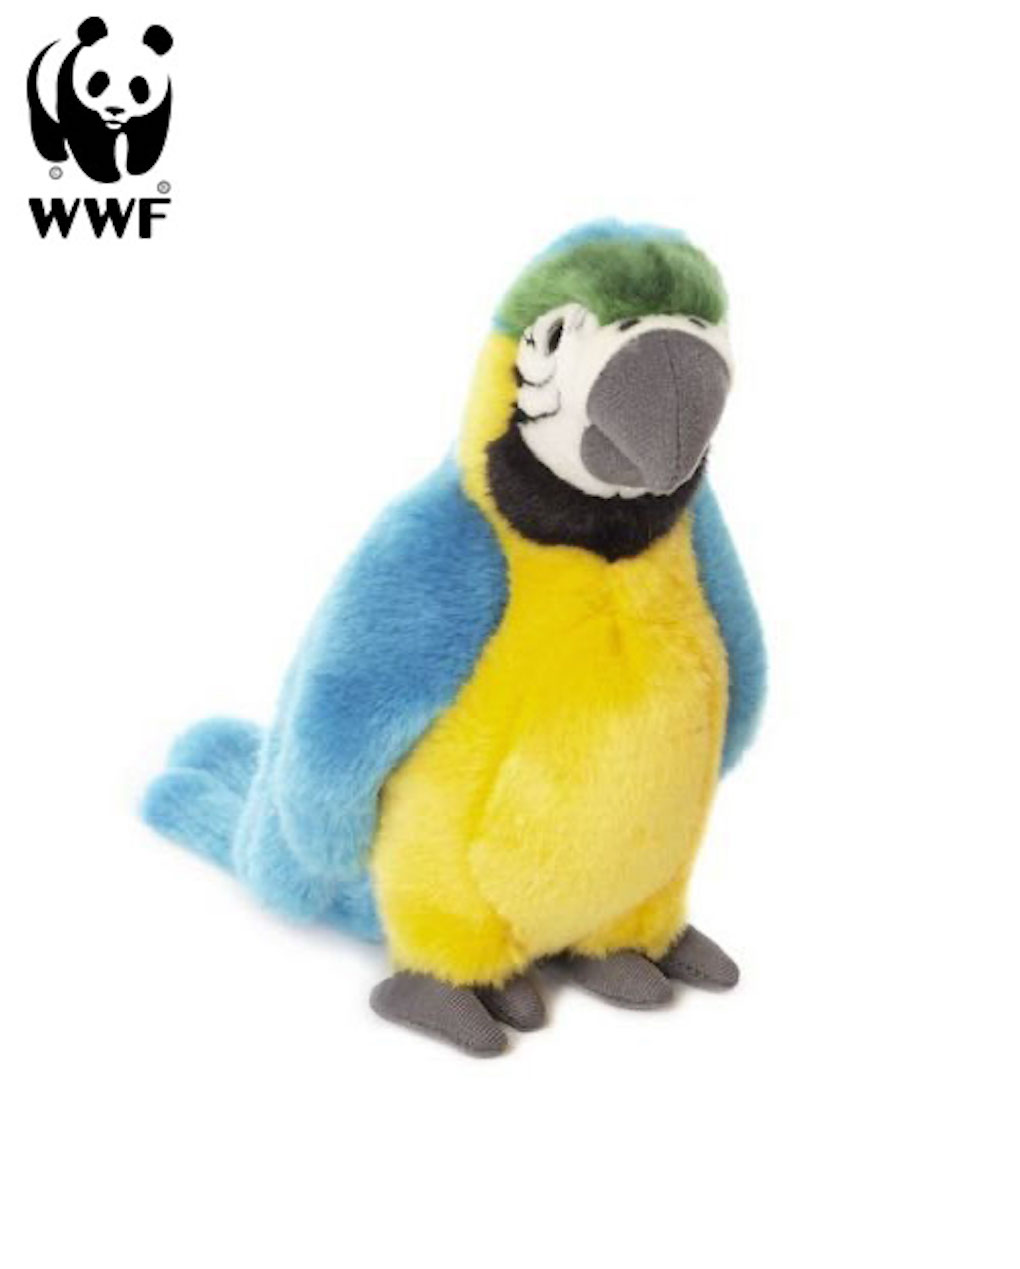 WWF Plüschtier Kakadu 24cm Kuscheltier Stofftier Plüschfigur Papagei Vogel